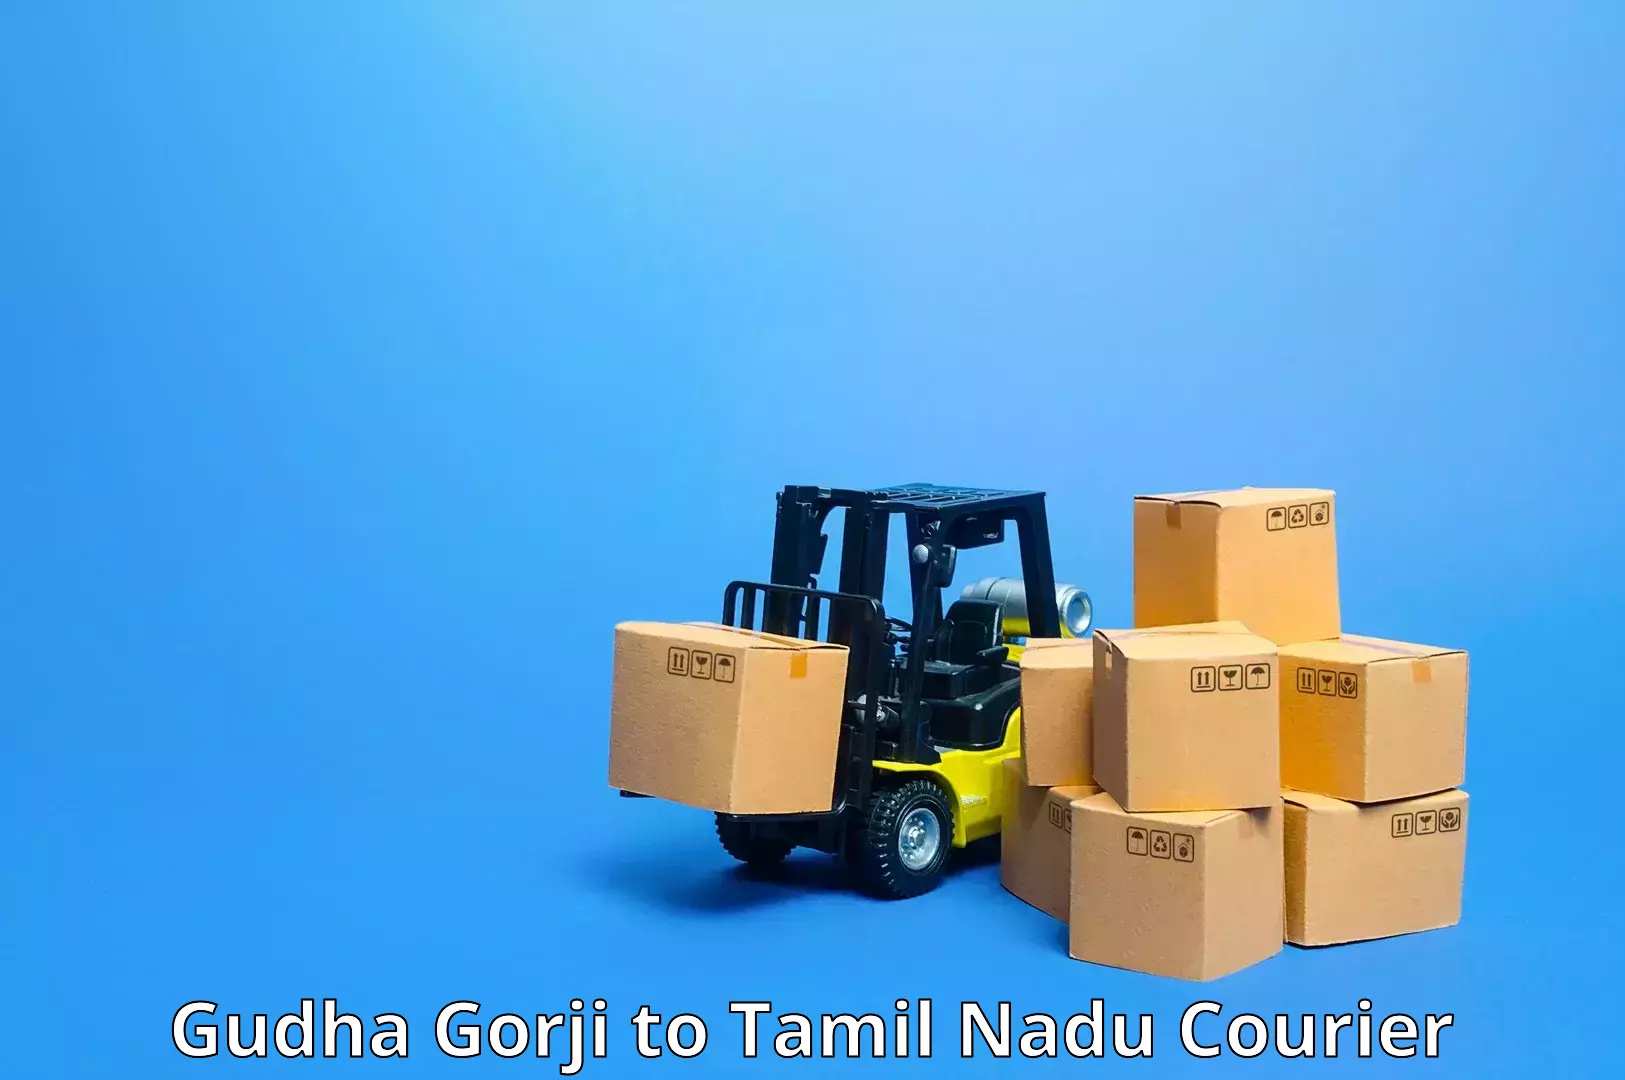 Express delivery network Gudha Gorji to Tiruturaipundi